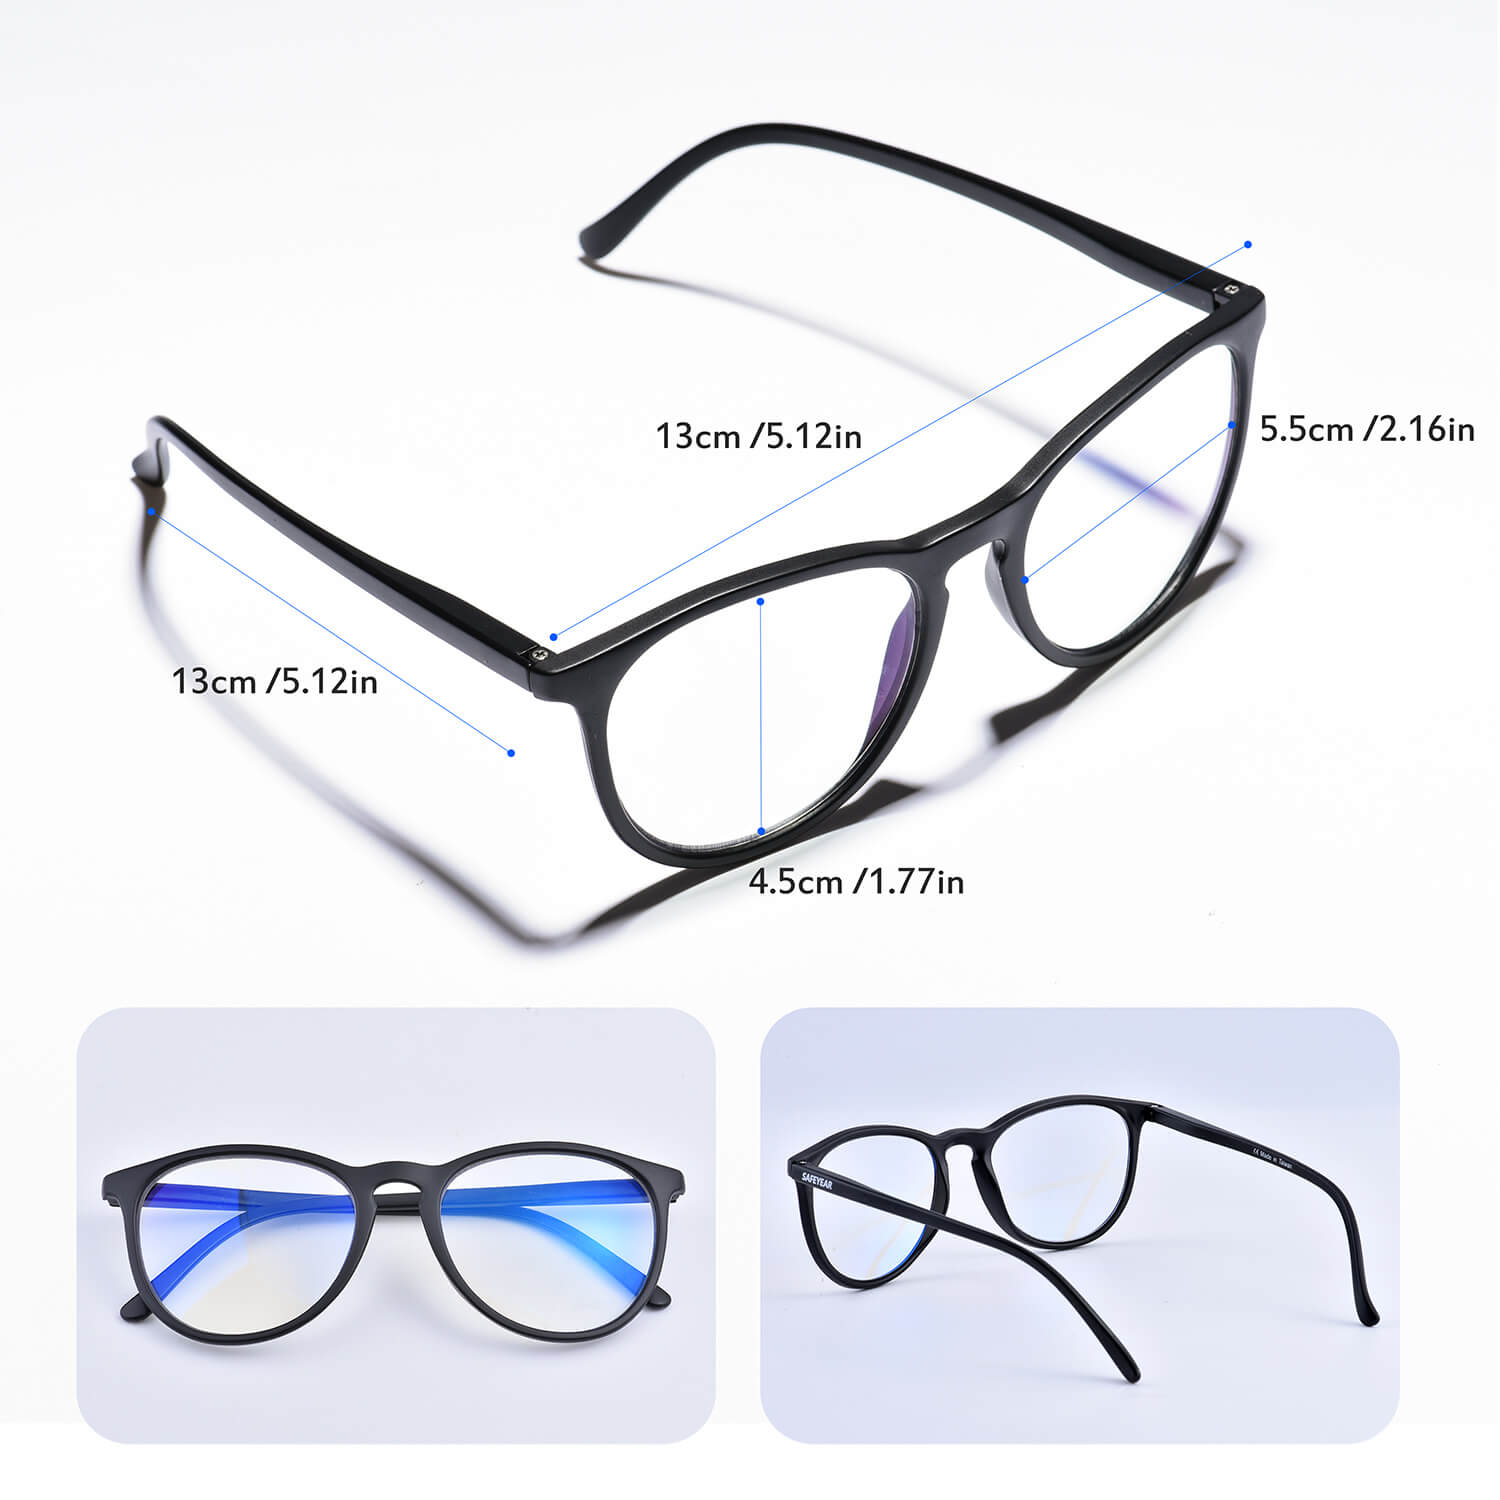 Safeyear Blue Light Blocking Glasses, Anti Glare Blue Light Glasses for Men & Women